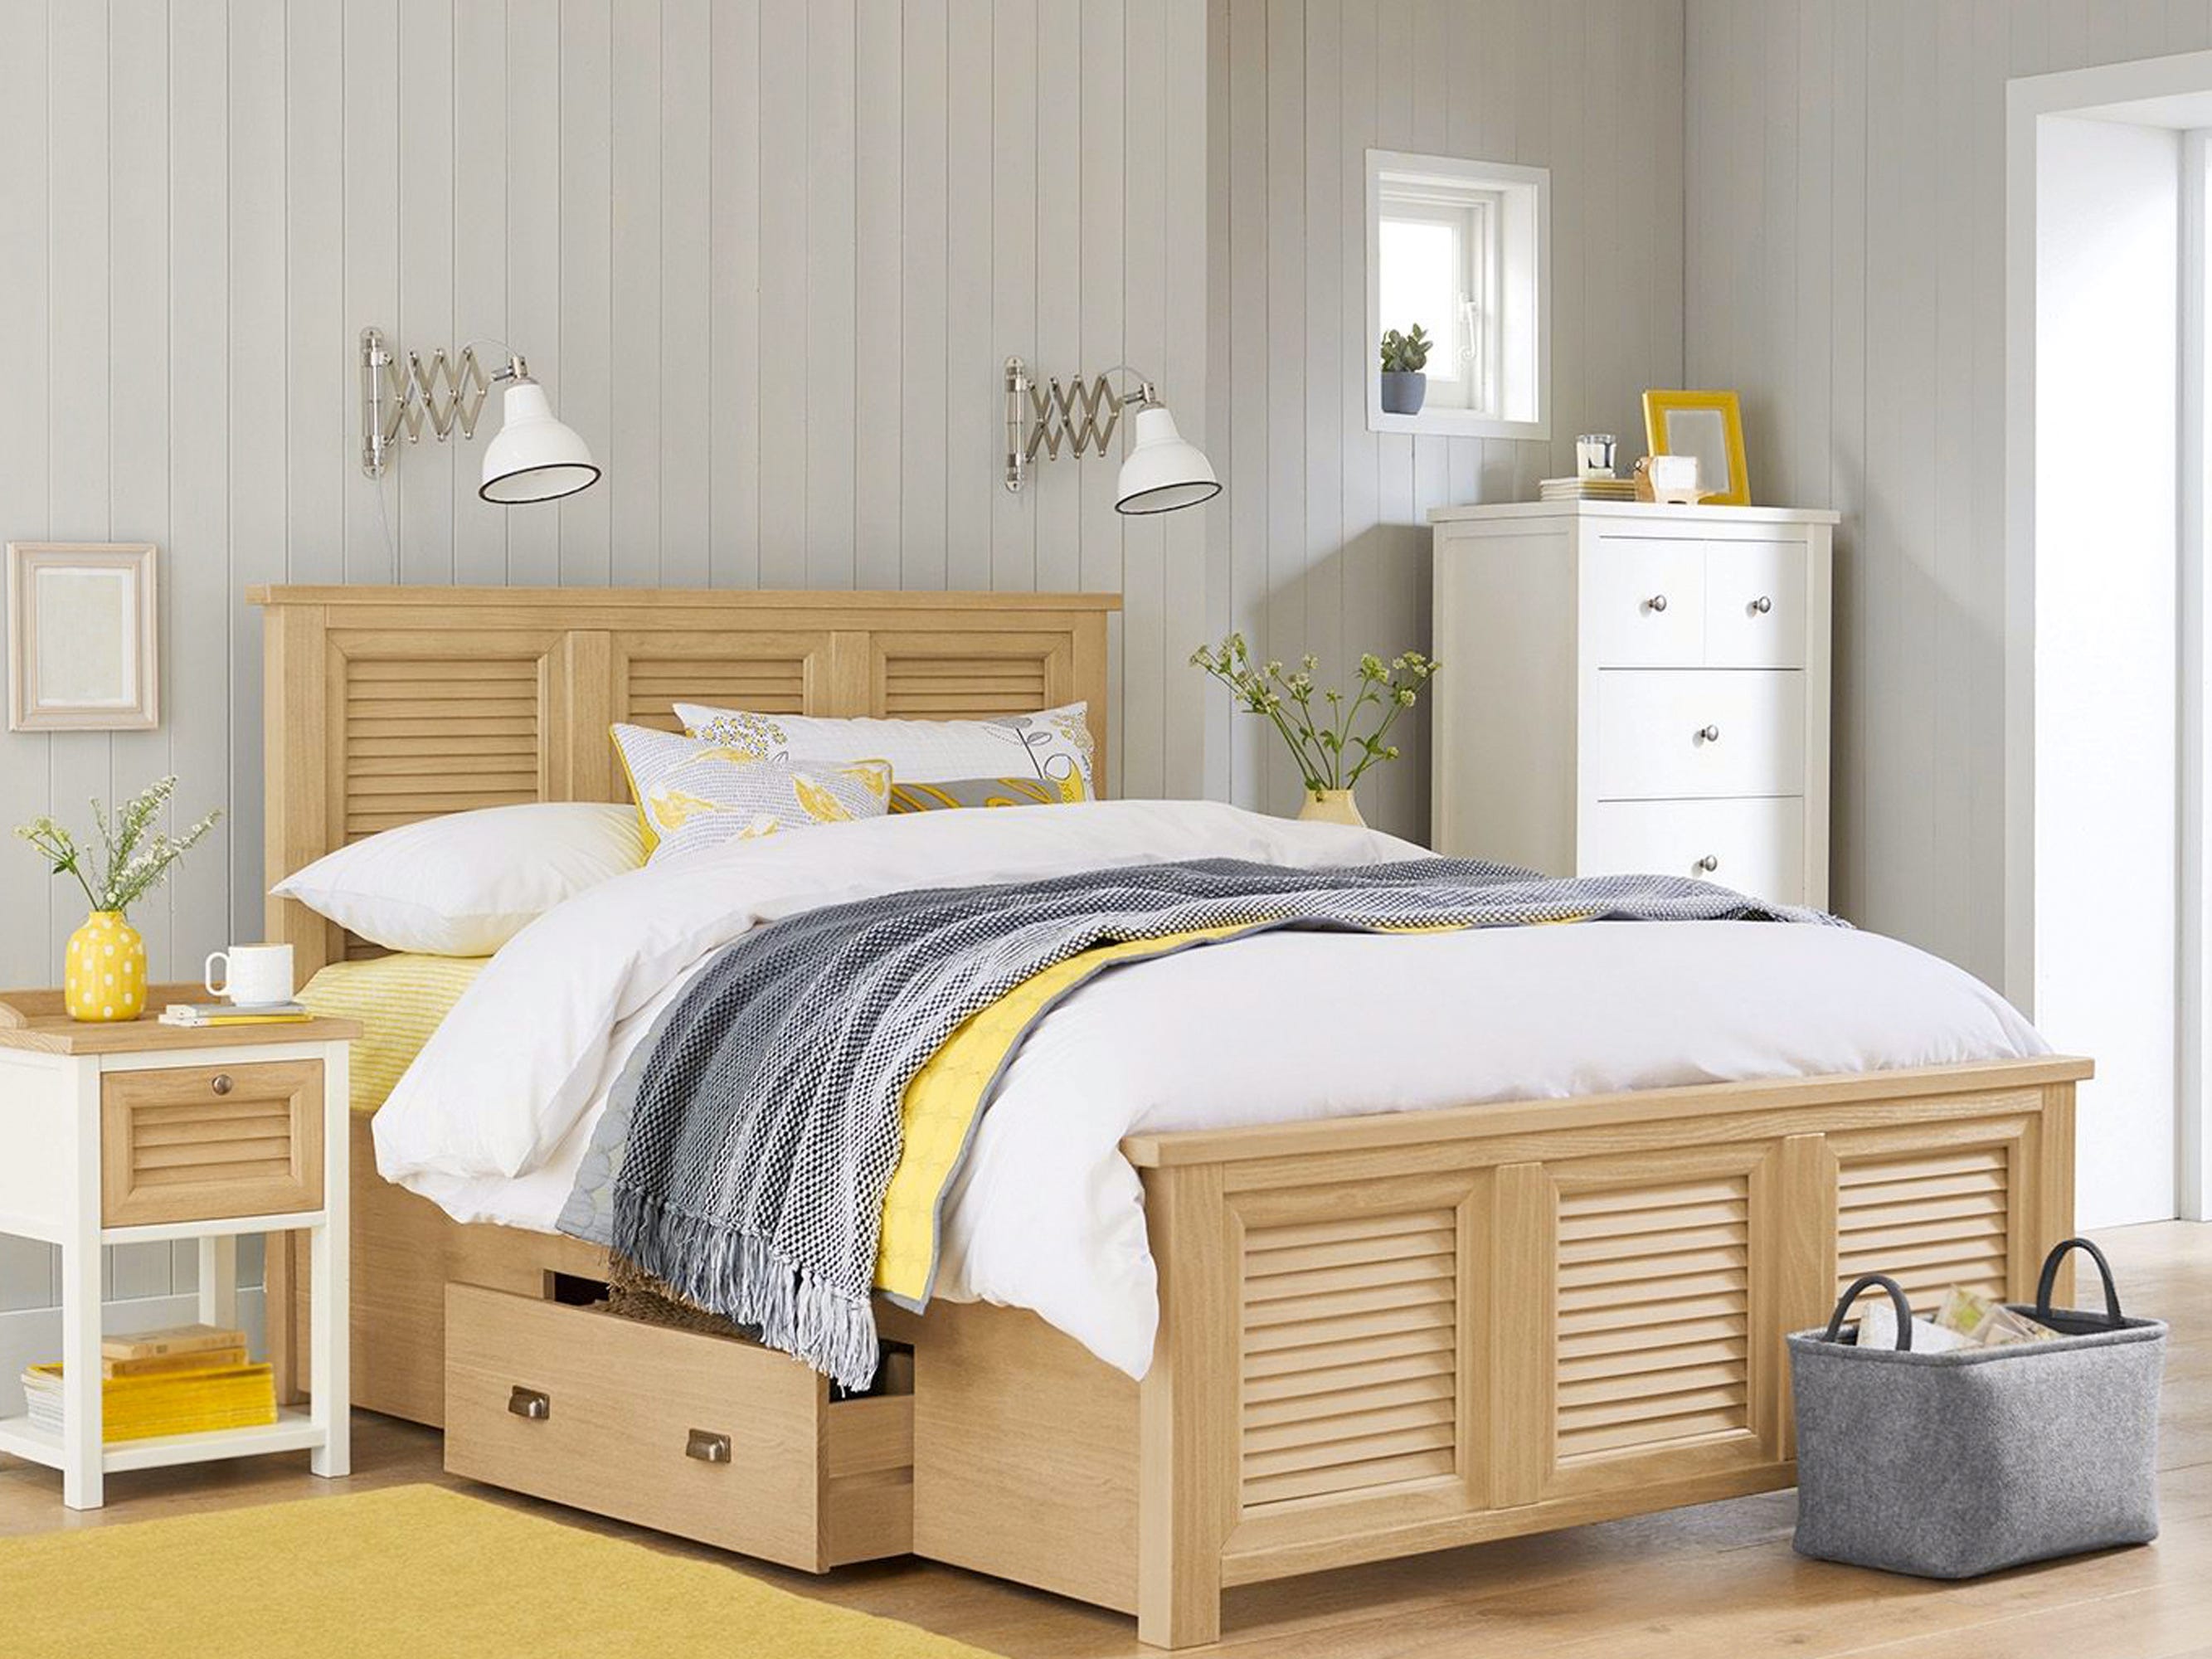 Helles, modernes Schlafzimmer mit gelben und grauen Designelementen